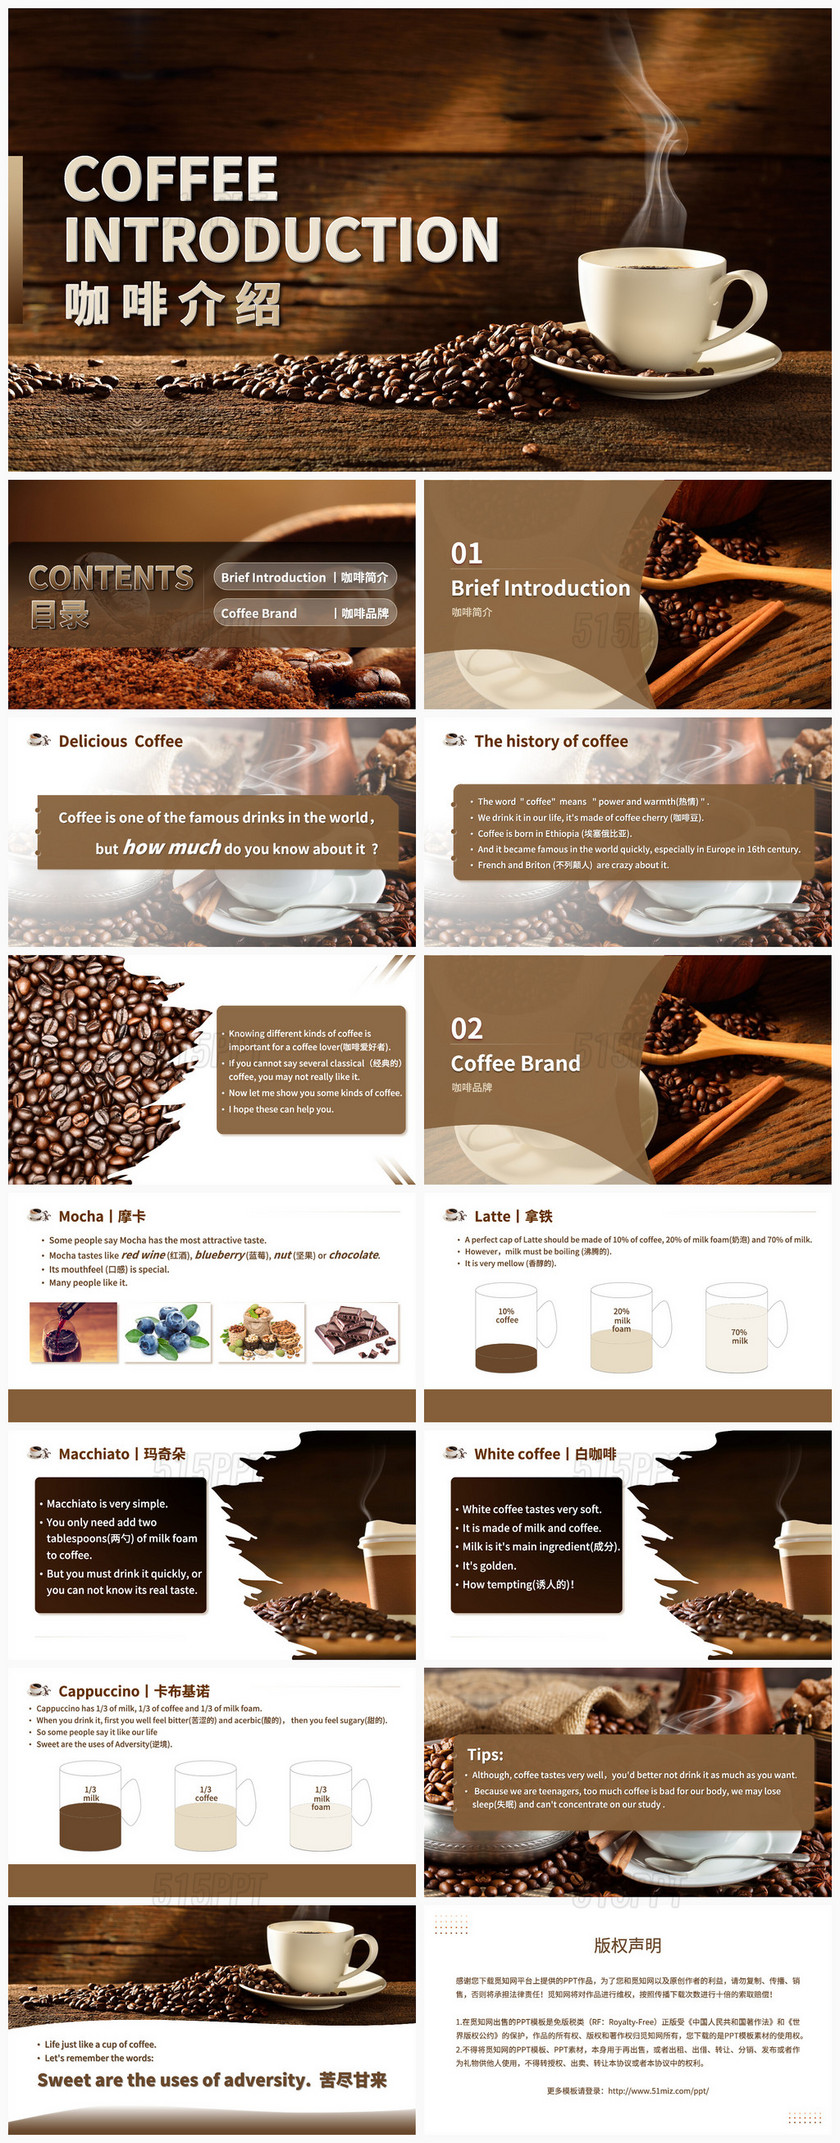 咖啡色褐色高端大气商务咖啡介绍咖啡品牌PPT模板咖啡介绍英语14页可以让设计师加点图表